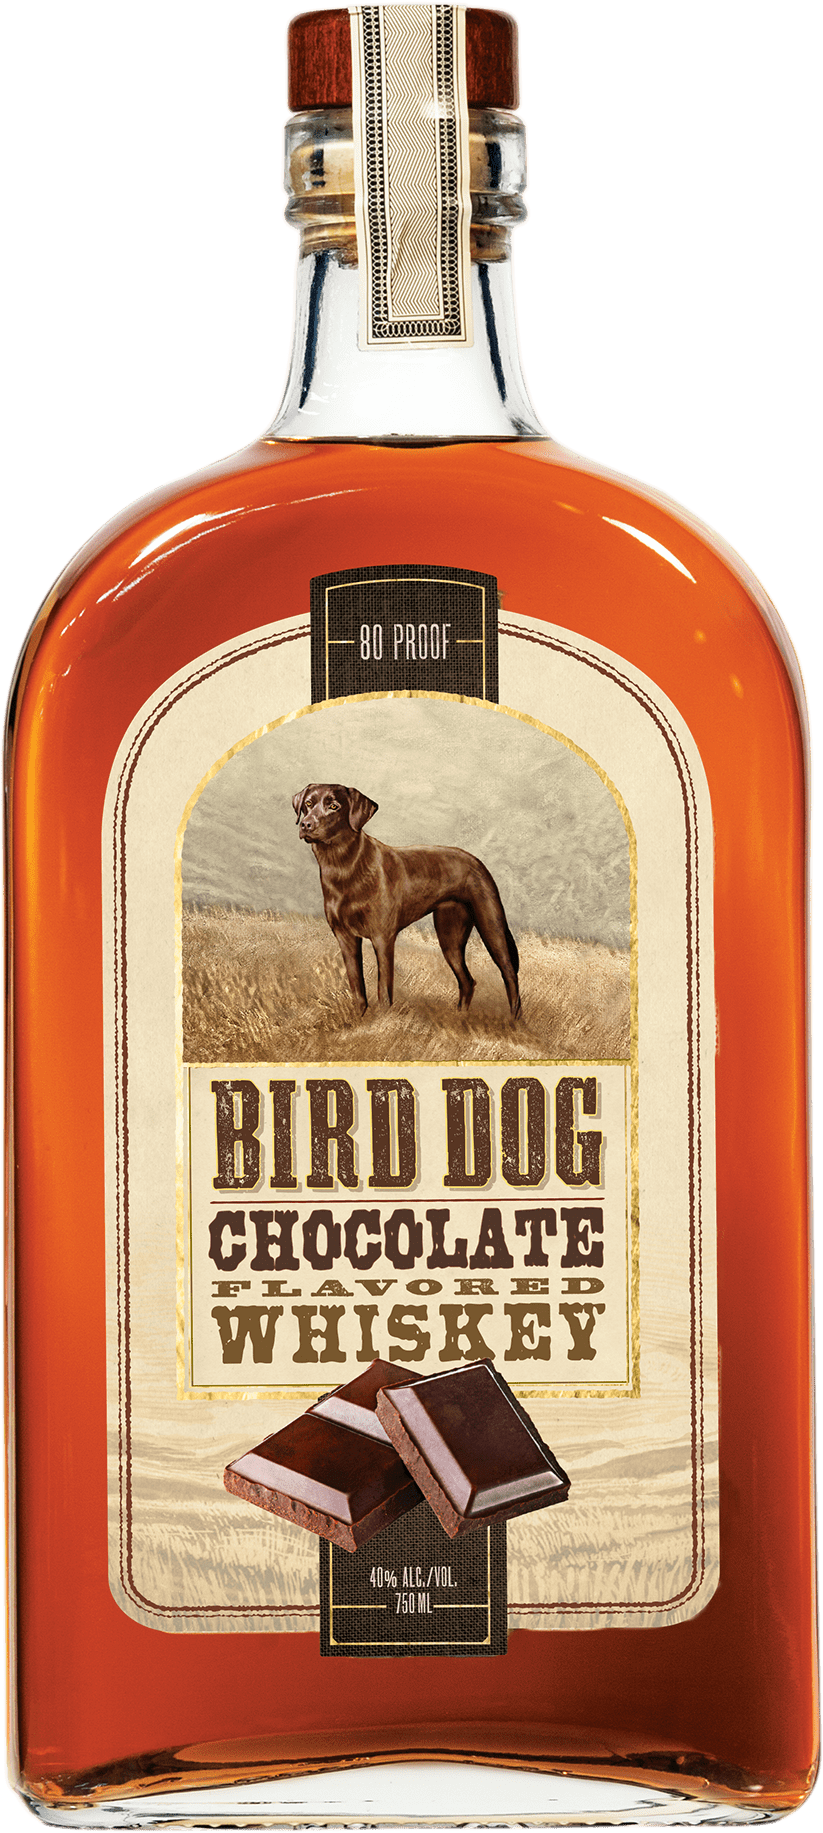 Bottle of Bird Dog Chocolate Whiskey